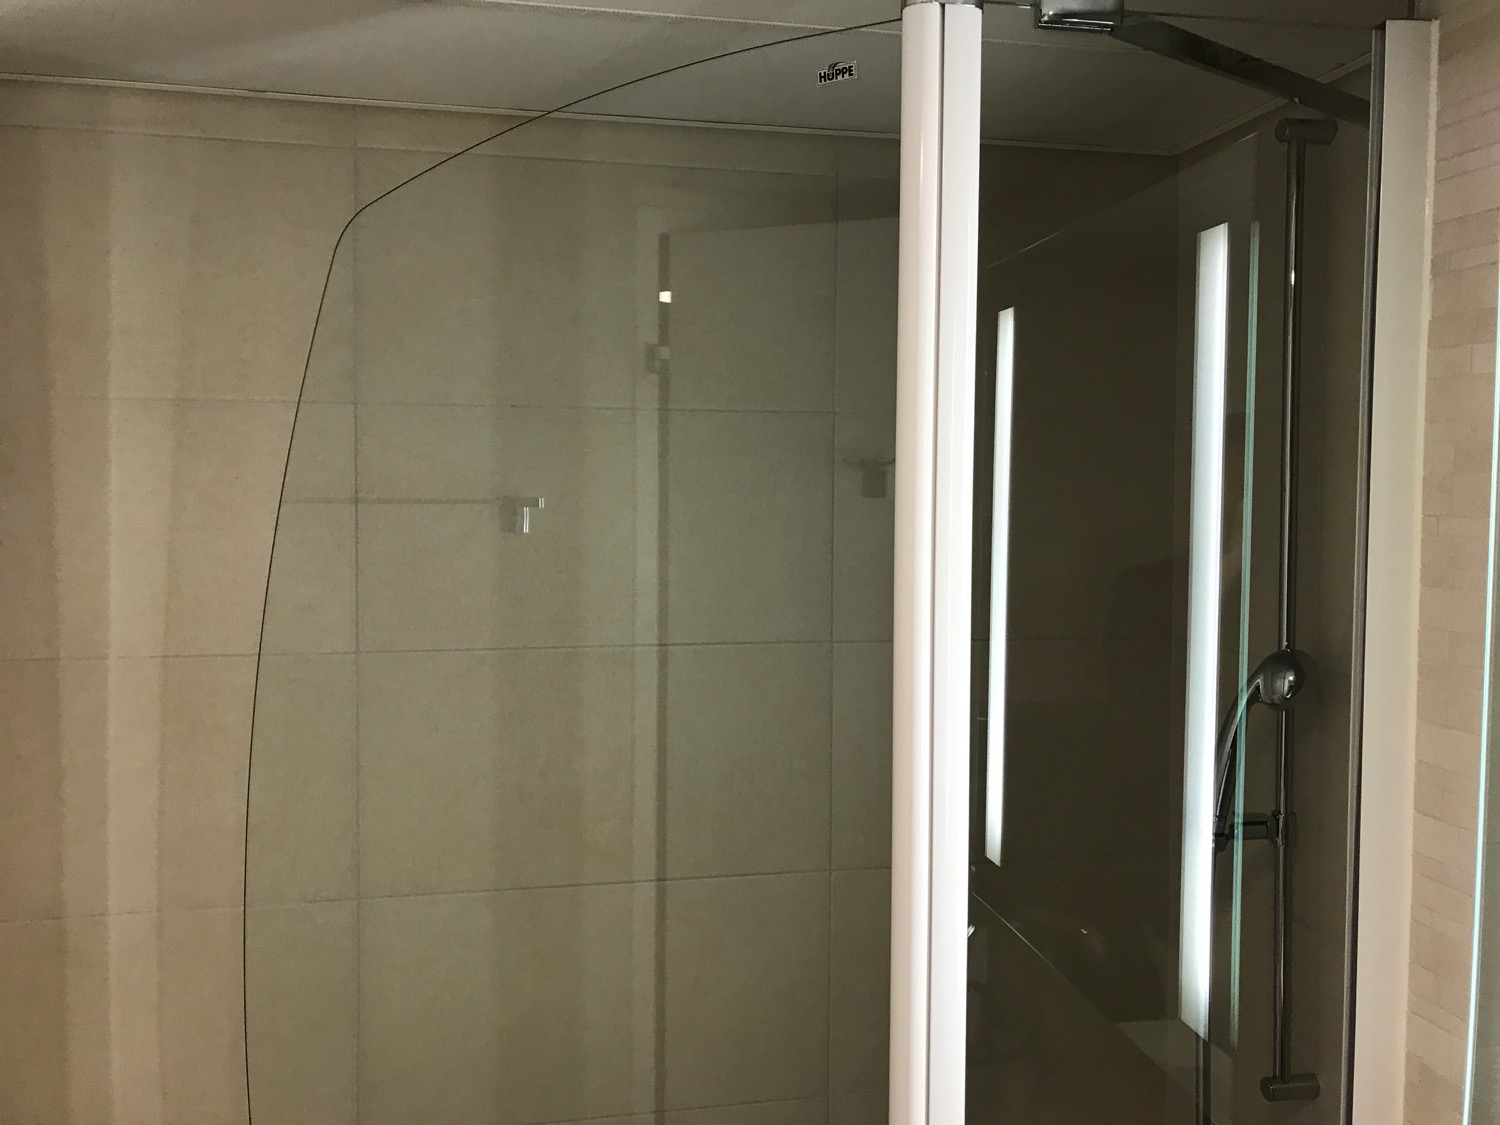 a glass shower door in a bathroom